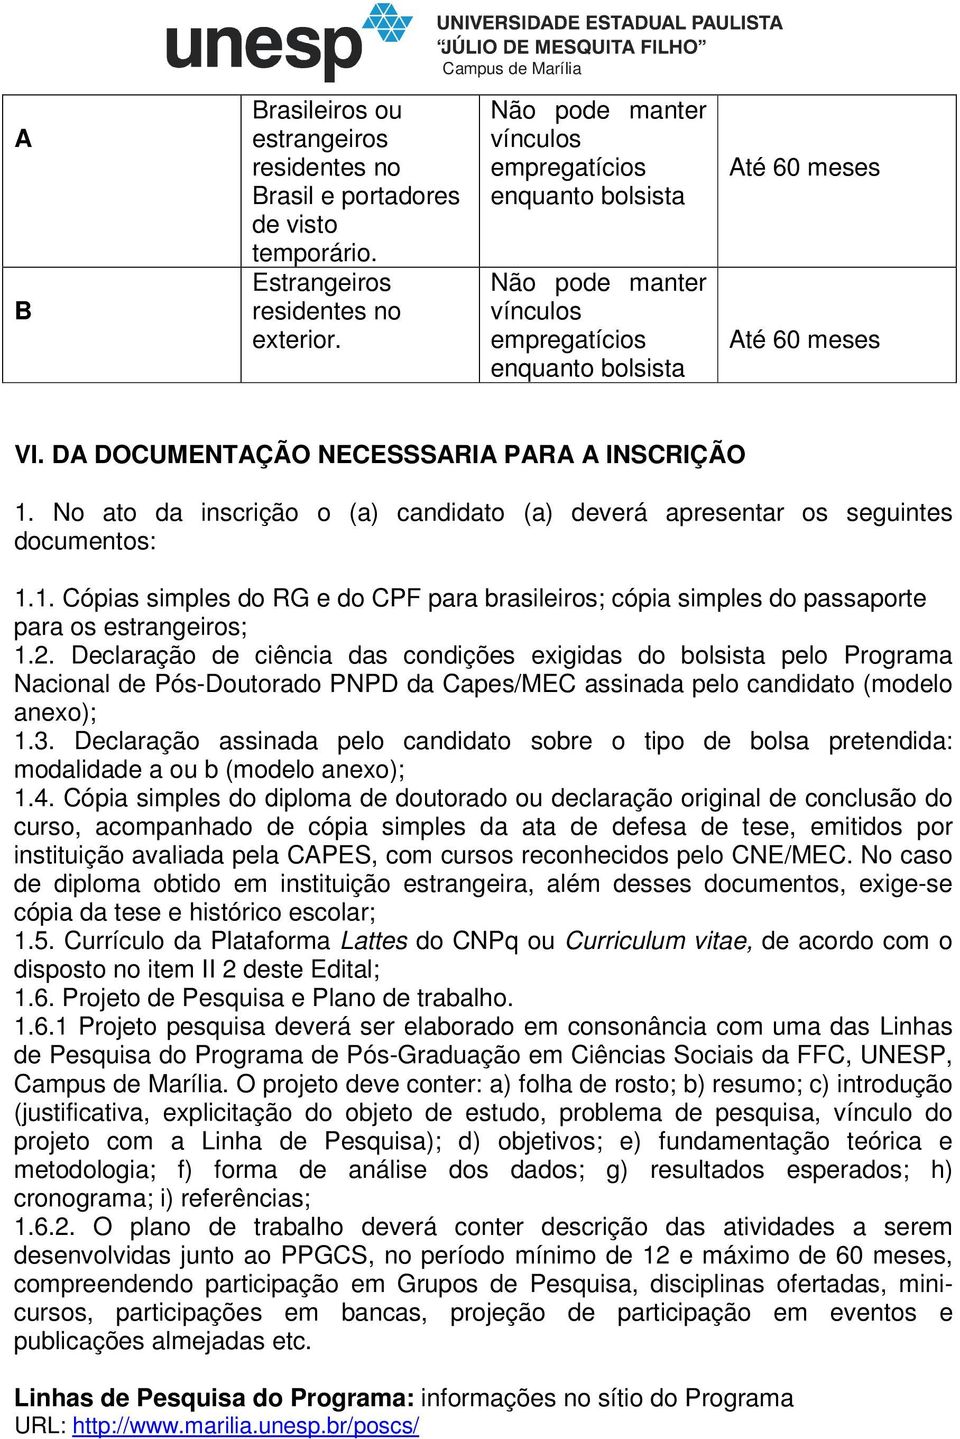 No ato da inscrição o (a) candidato (a) deverá apresentar os seguintes documentos: 1.1. Cópias simples do RG e do CPF para brasileiros; cópia simples do passaporte para os estrangeiros; 1.2.